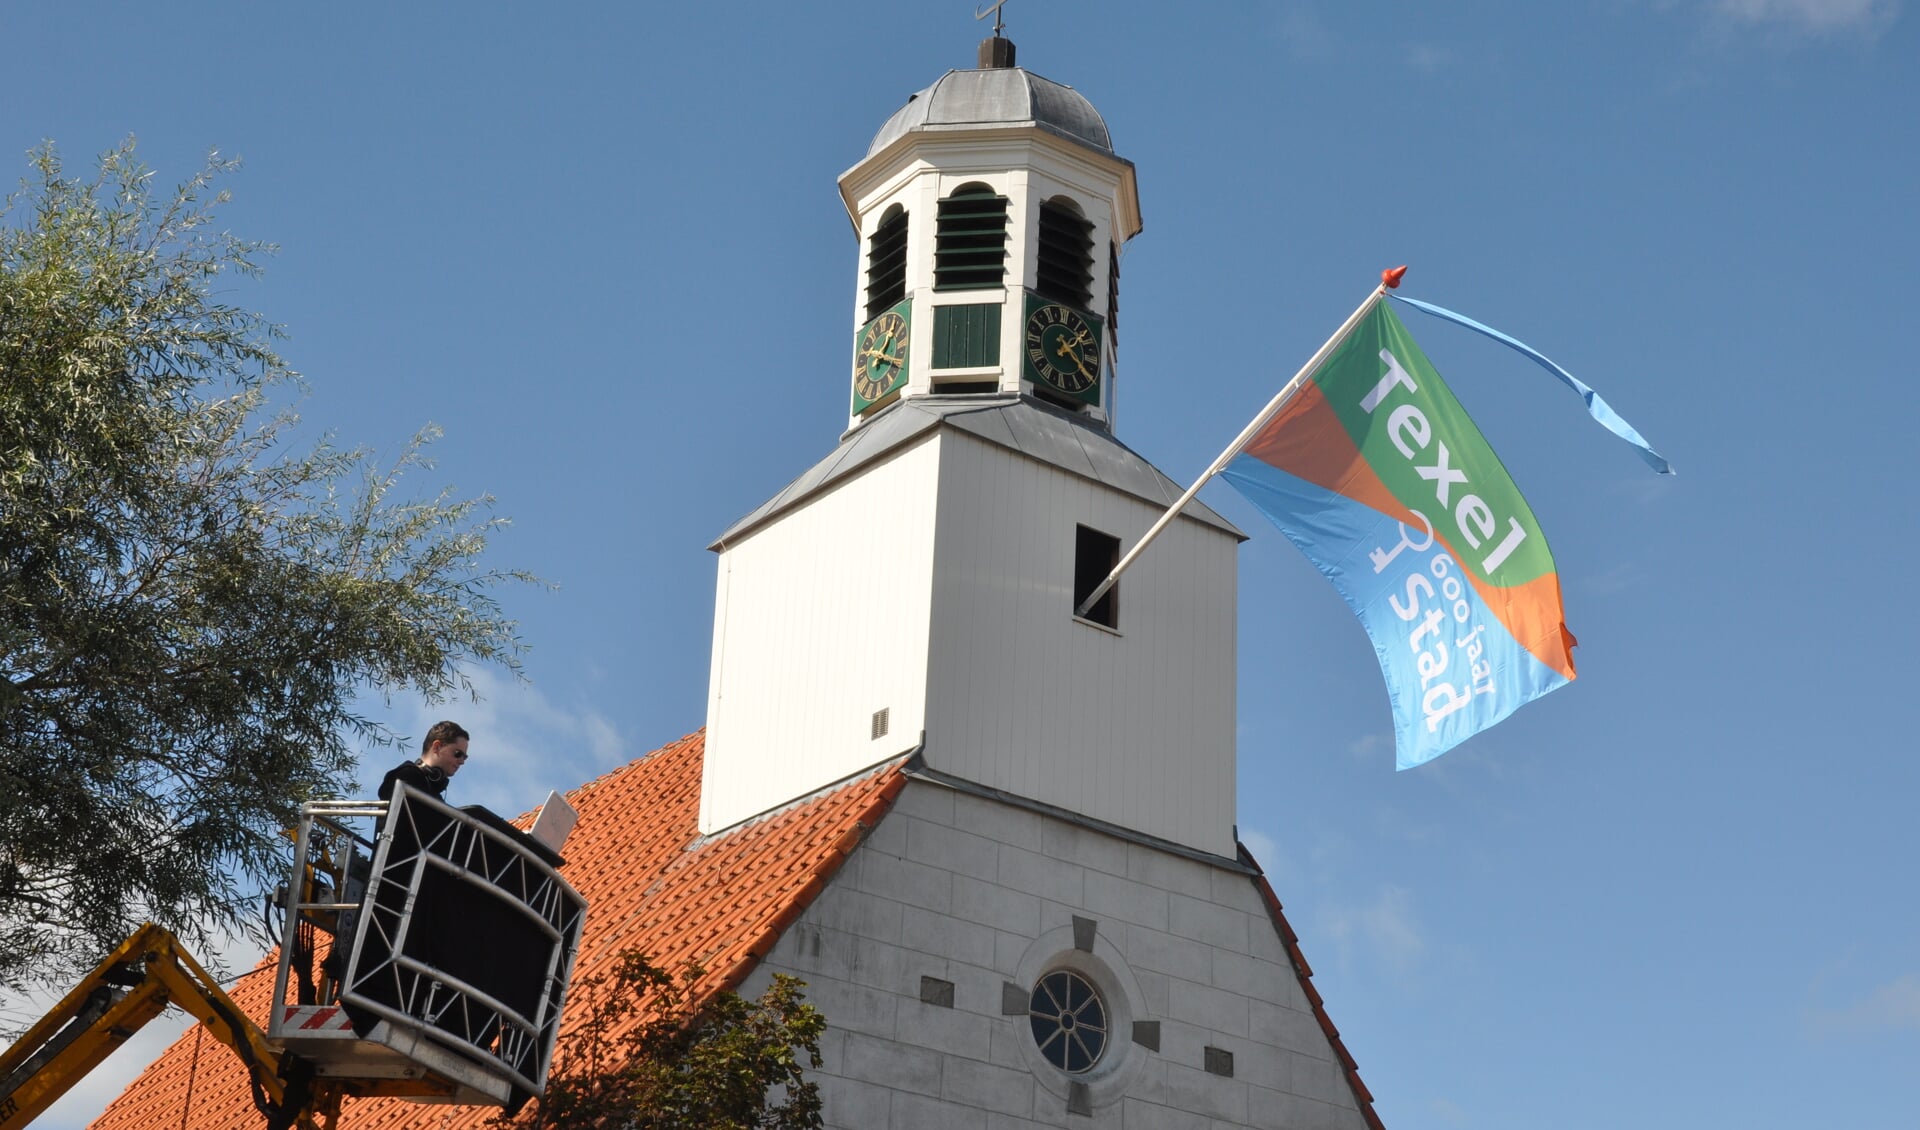 De vlag op het kerkje van De Koog.